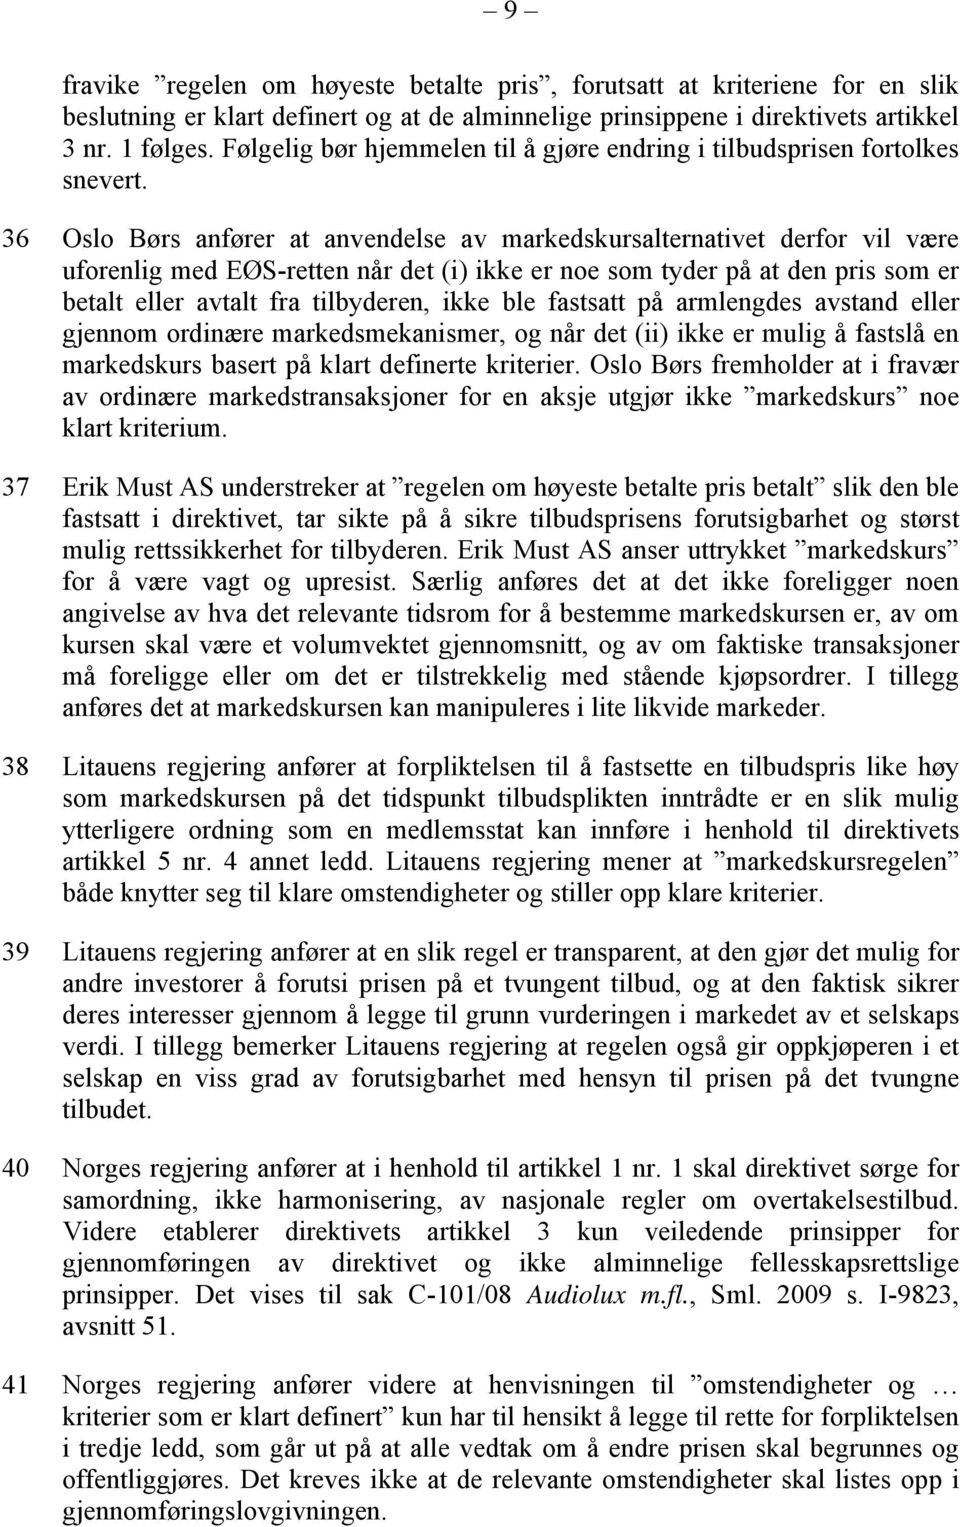 36 Oslo Børs anfører at anvendelse av markedskursalternativet derfor vil være uforenlig med EØS-retten når det (i) ikke er noe som tyder på at den pris som er betalt eller avtalt fra tilbyderen, ikke